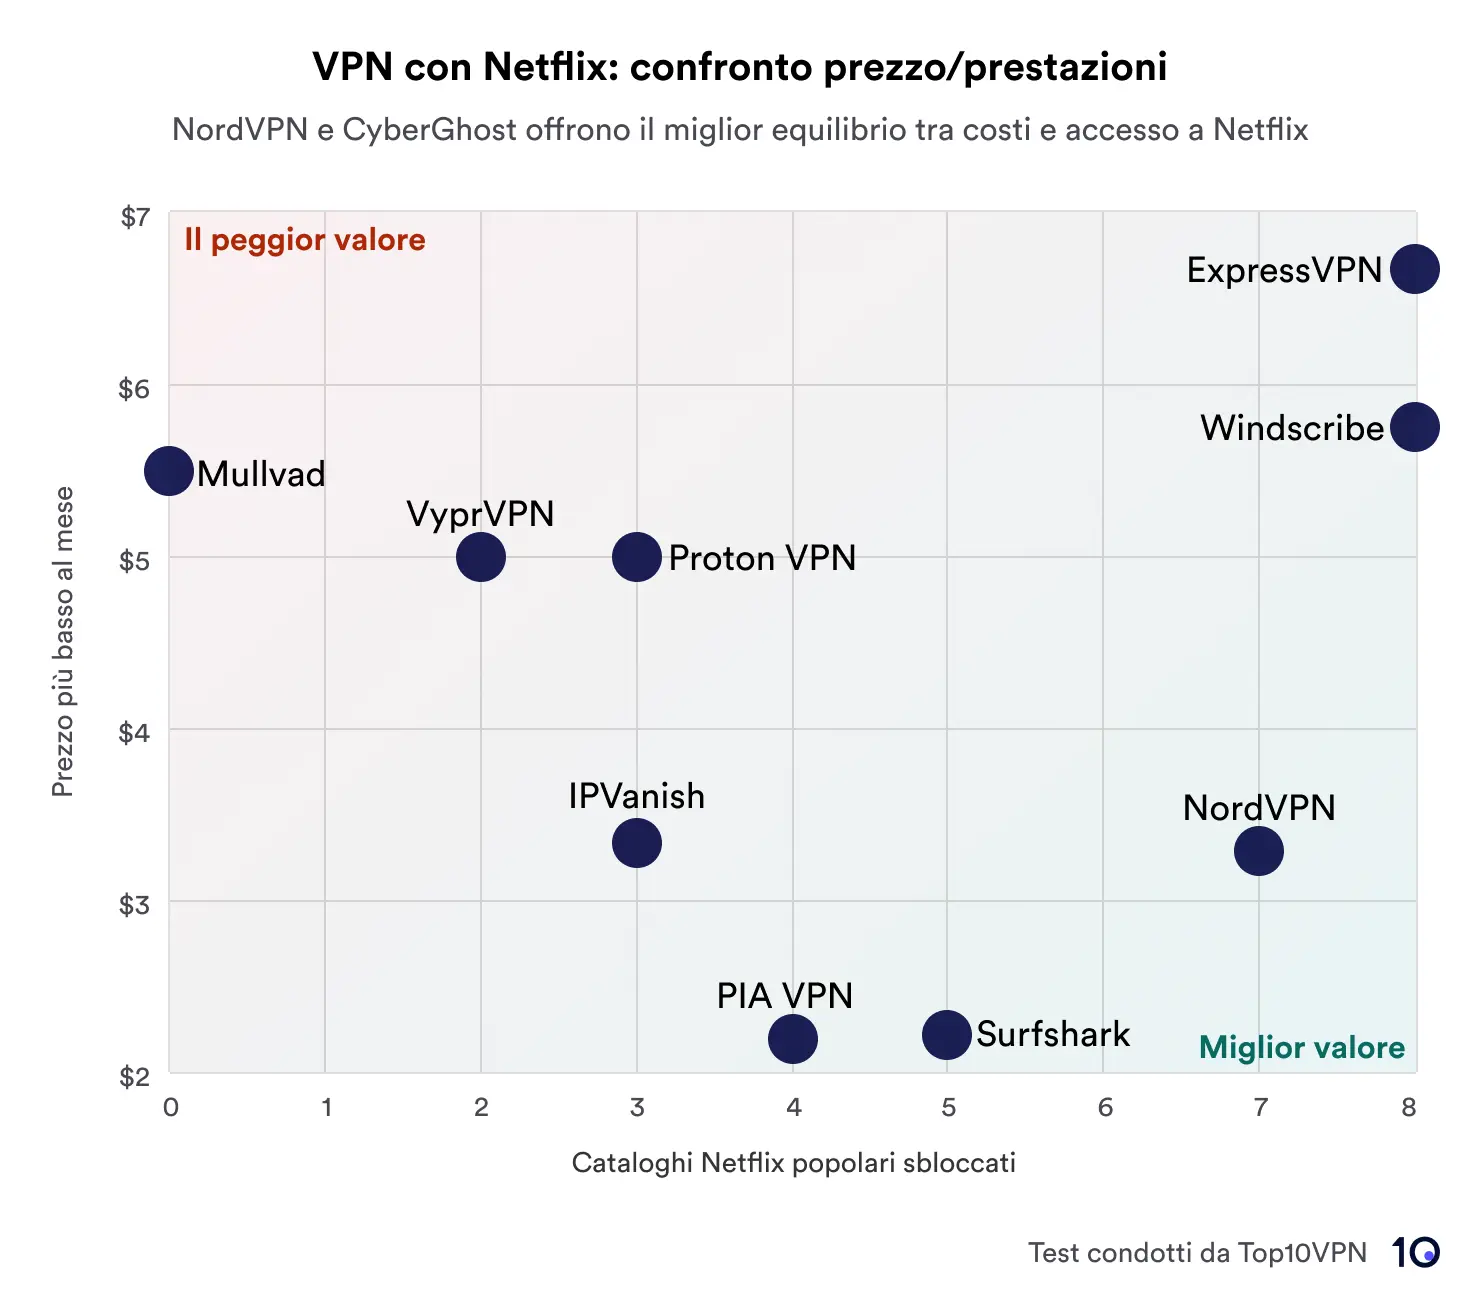 Grafico a dispersione che mostra un confronto tra servizi VPN in base al prezzo rispetto alle prestazioni nello sblocco delle librerie Netflix. NordVPN e CyberGhost sono evidenziati per offrire il miglior rapporto qualità-prezzo, riportato nell'area contrassegnata con 